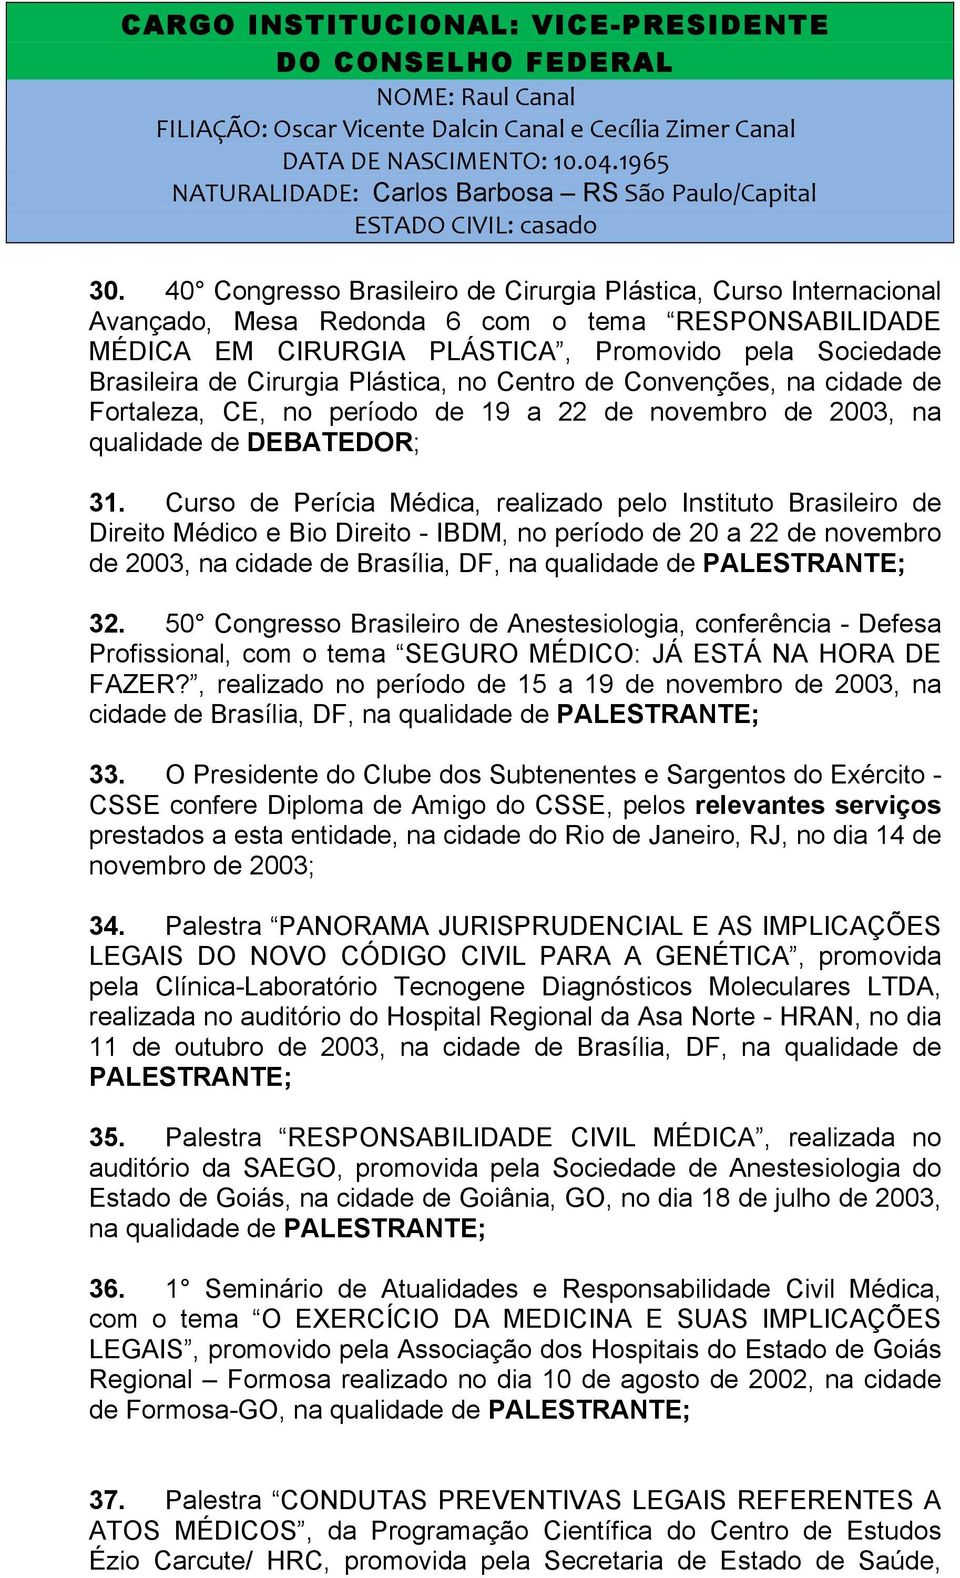 Curso de Perícia Médica, realizado pelo Instituto Brasileiro de Direito Médico e Bio Direito - IBDM, no período de 20 a 22 de novembro de 2003, na cidade de Brasília, DF, na qualidade de 32.